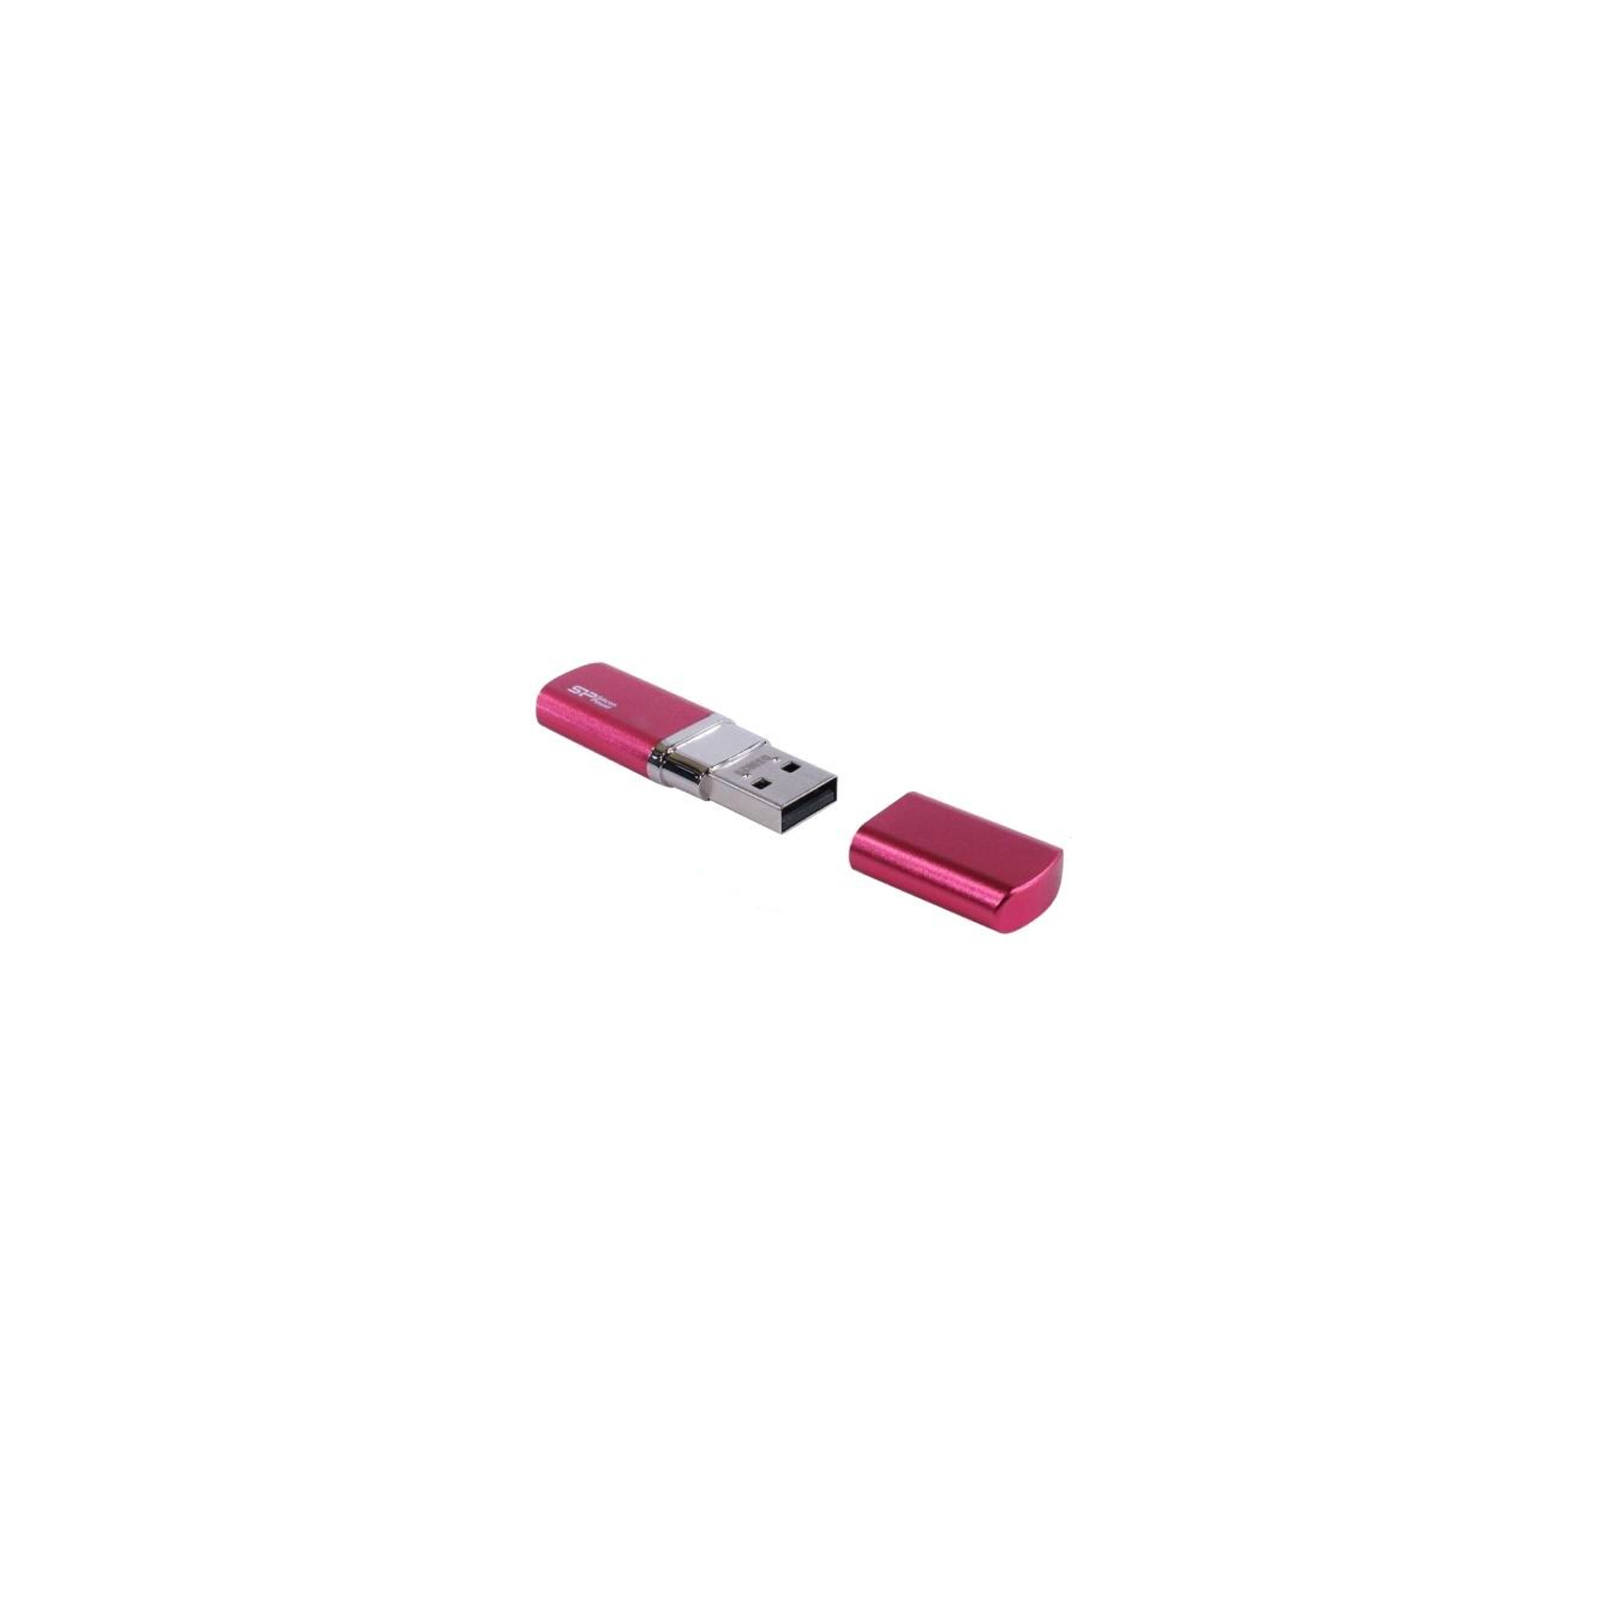 USB флеш накопичувач Silicon Power 64GB LuxMini 720 USB 2.0 (SP064GBUF2720V1H) зображення 3